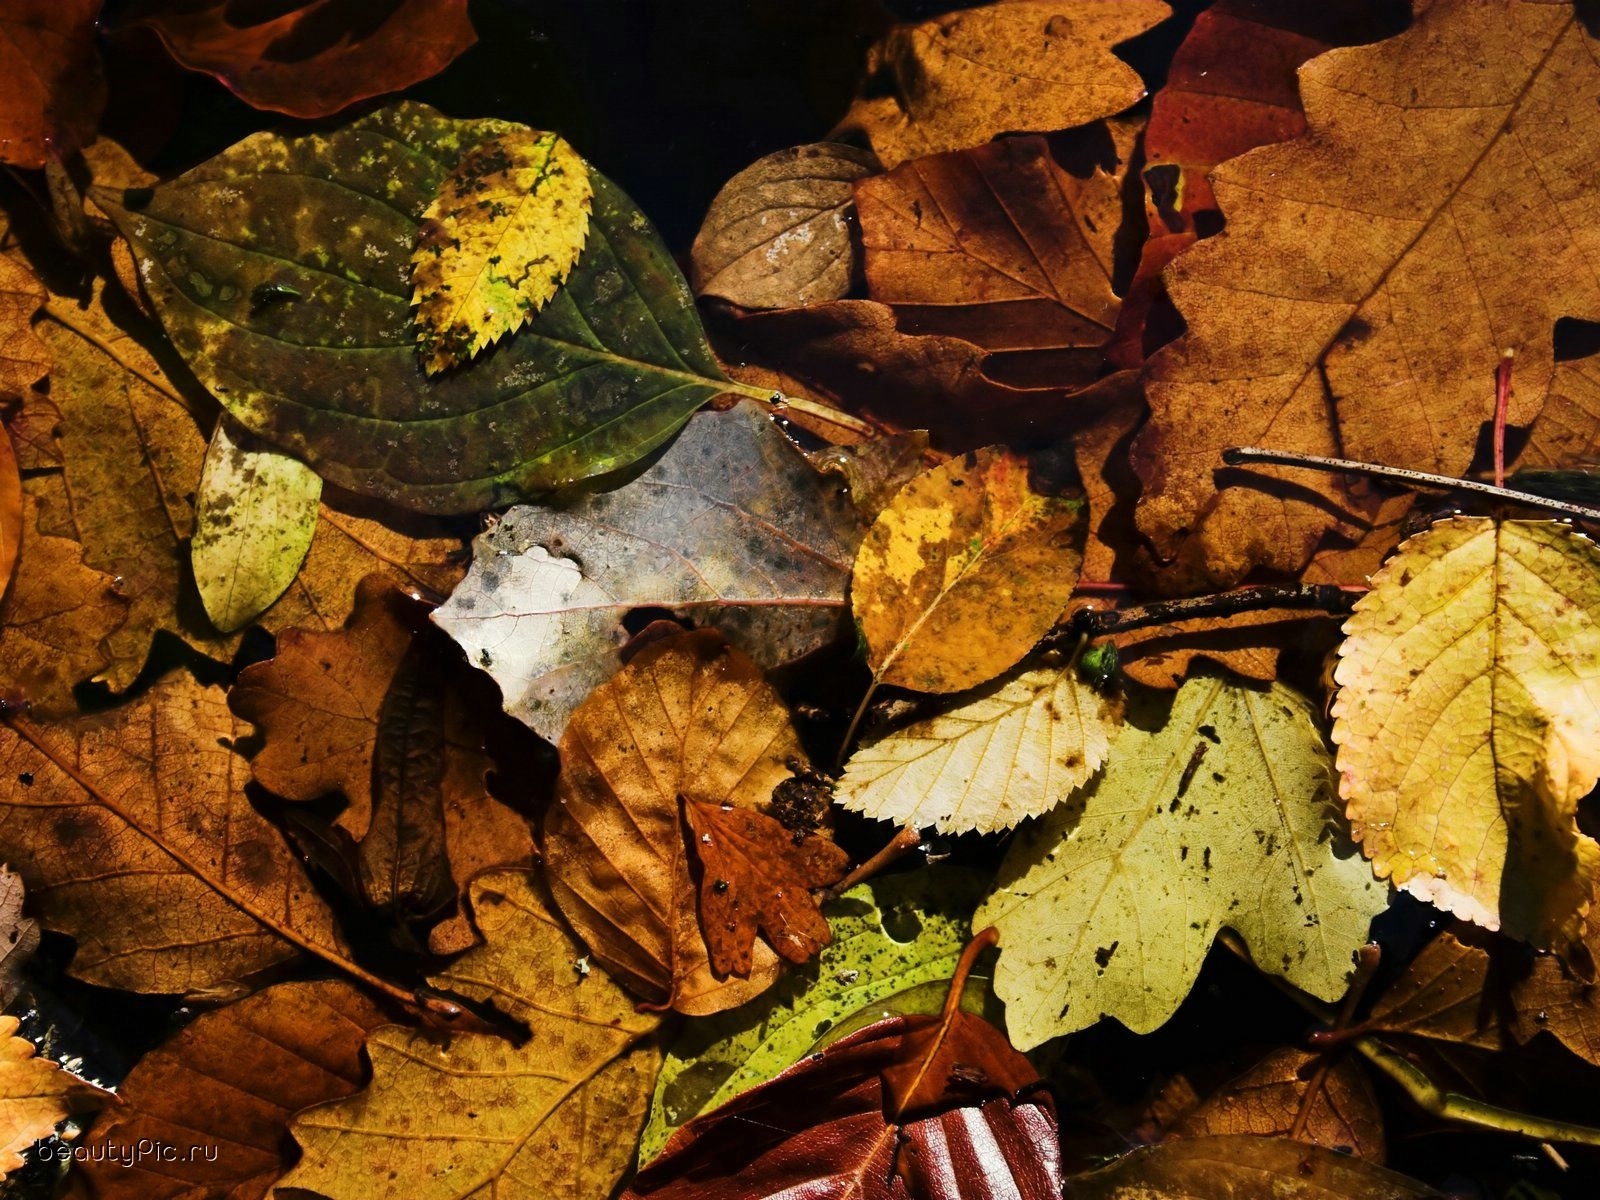 Скачать обои бесплатно Фон, Листья, Растения, Осень картинка на рабочий стол ПК